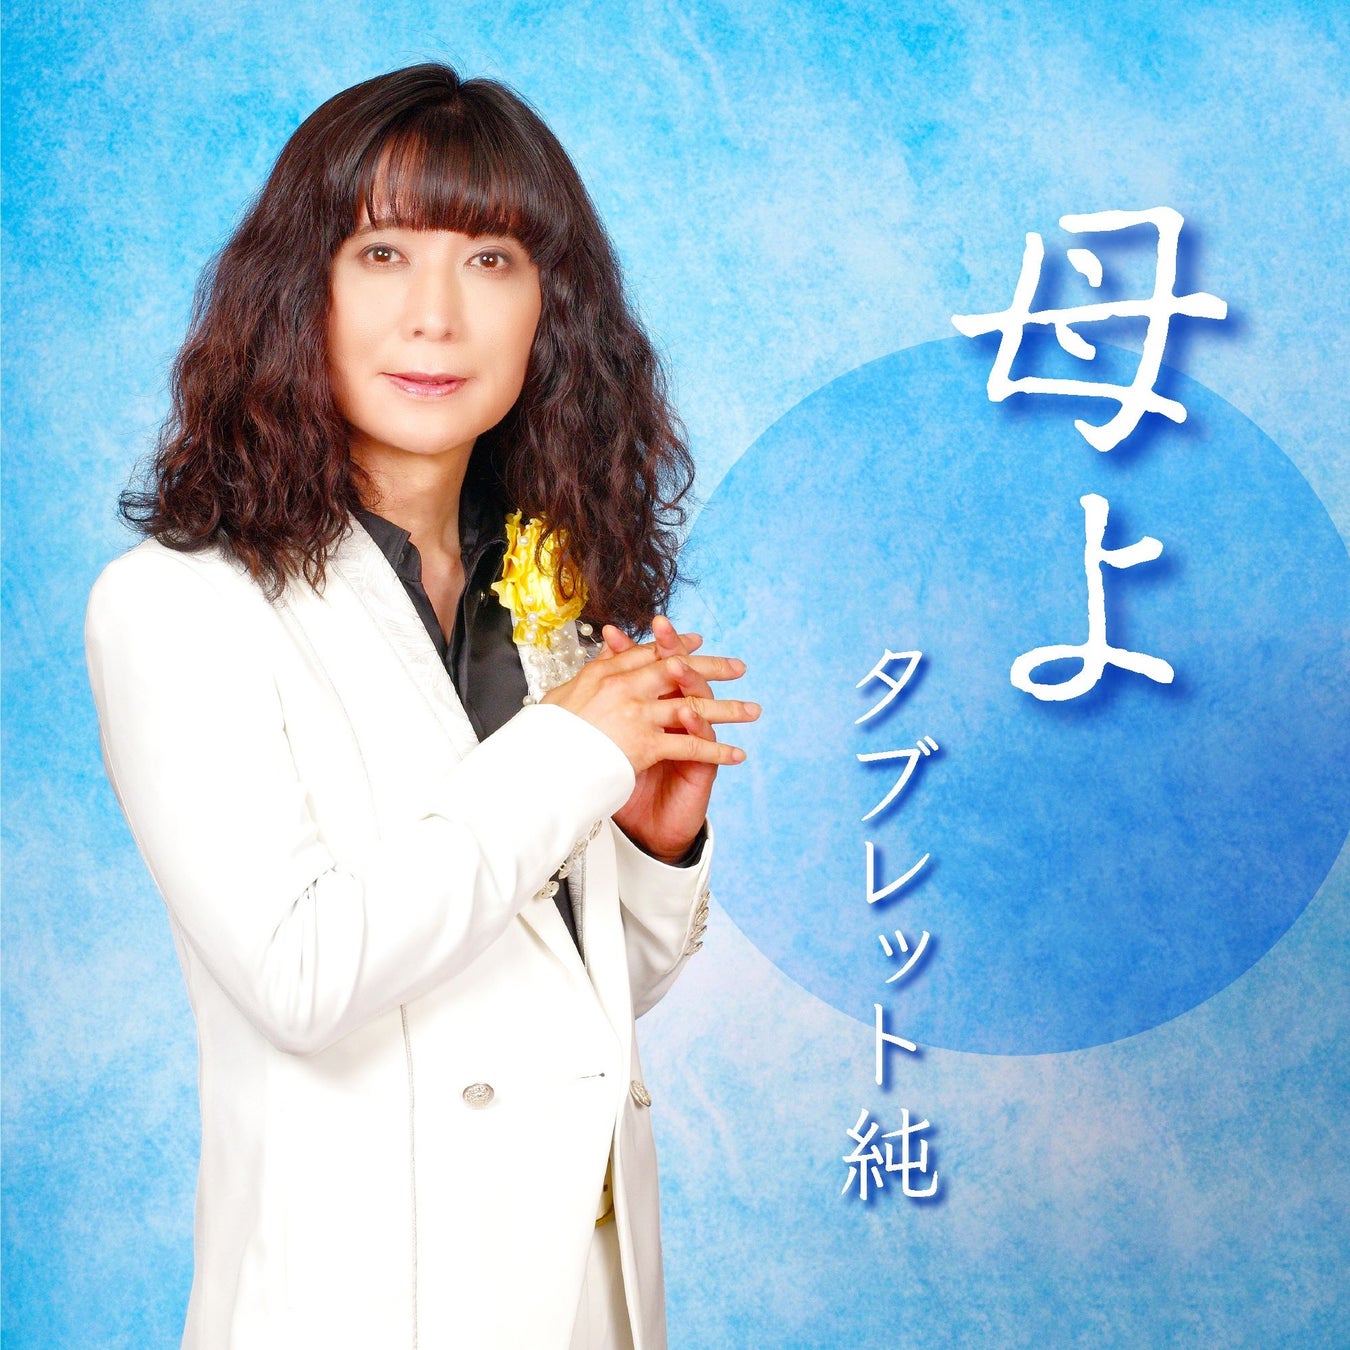 加藤登紀子が楽曲提供したタブレット純の新曲「母よ」がリリース決定！